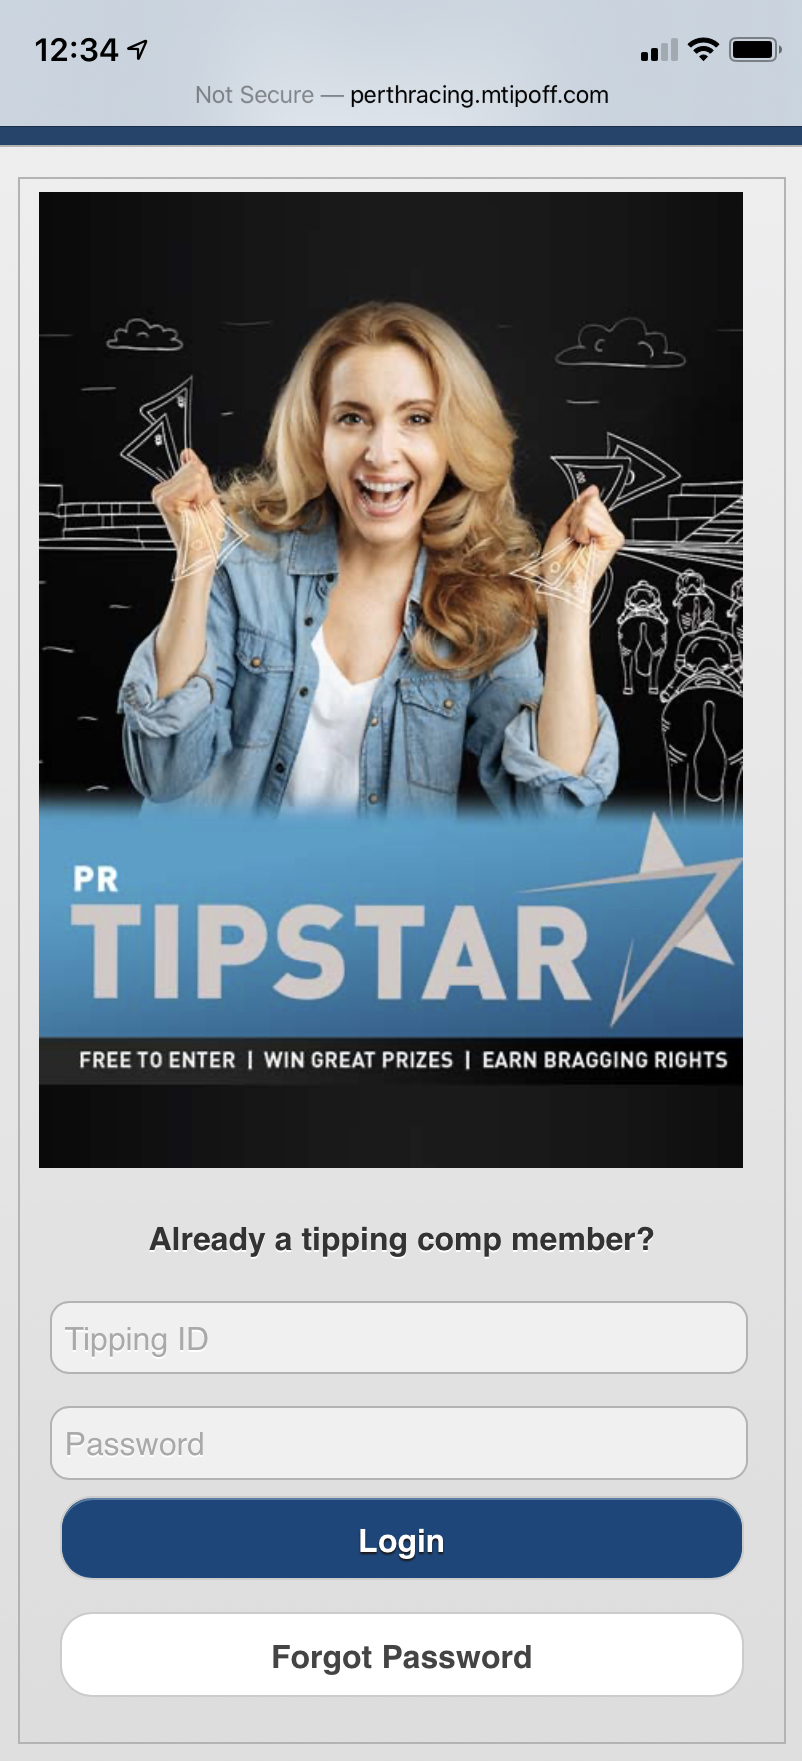 PR TipStar